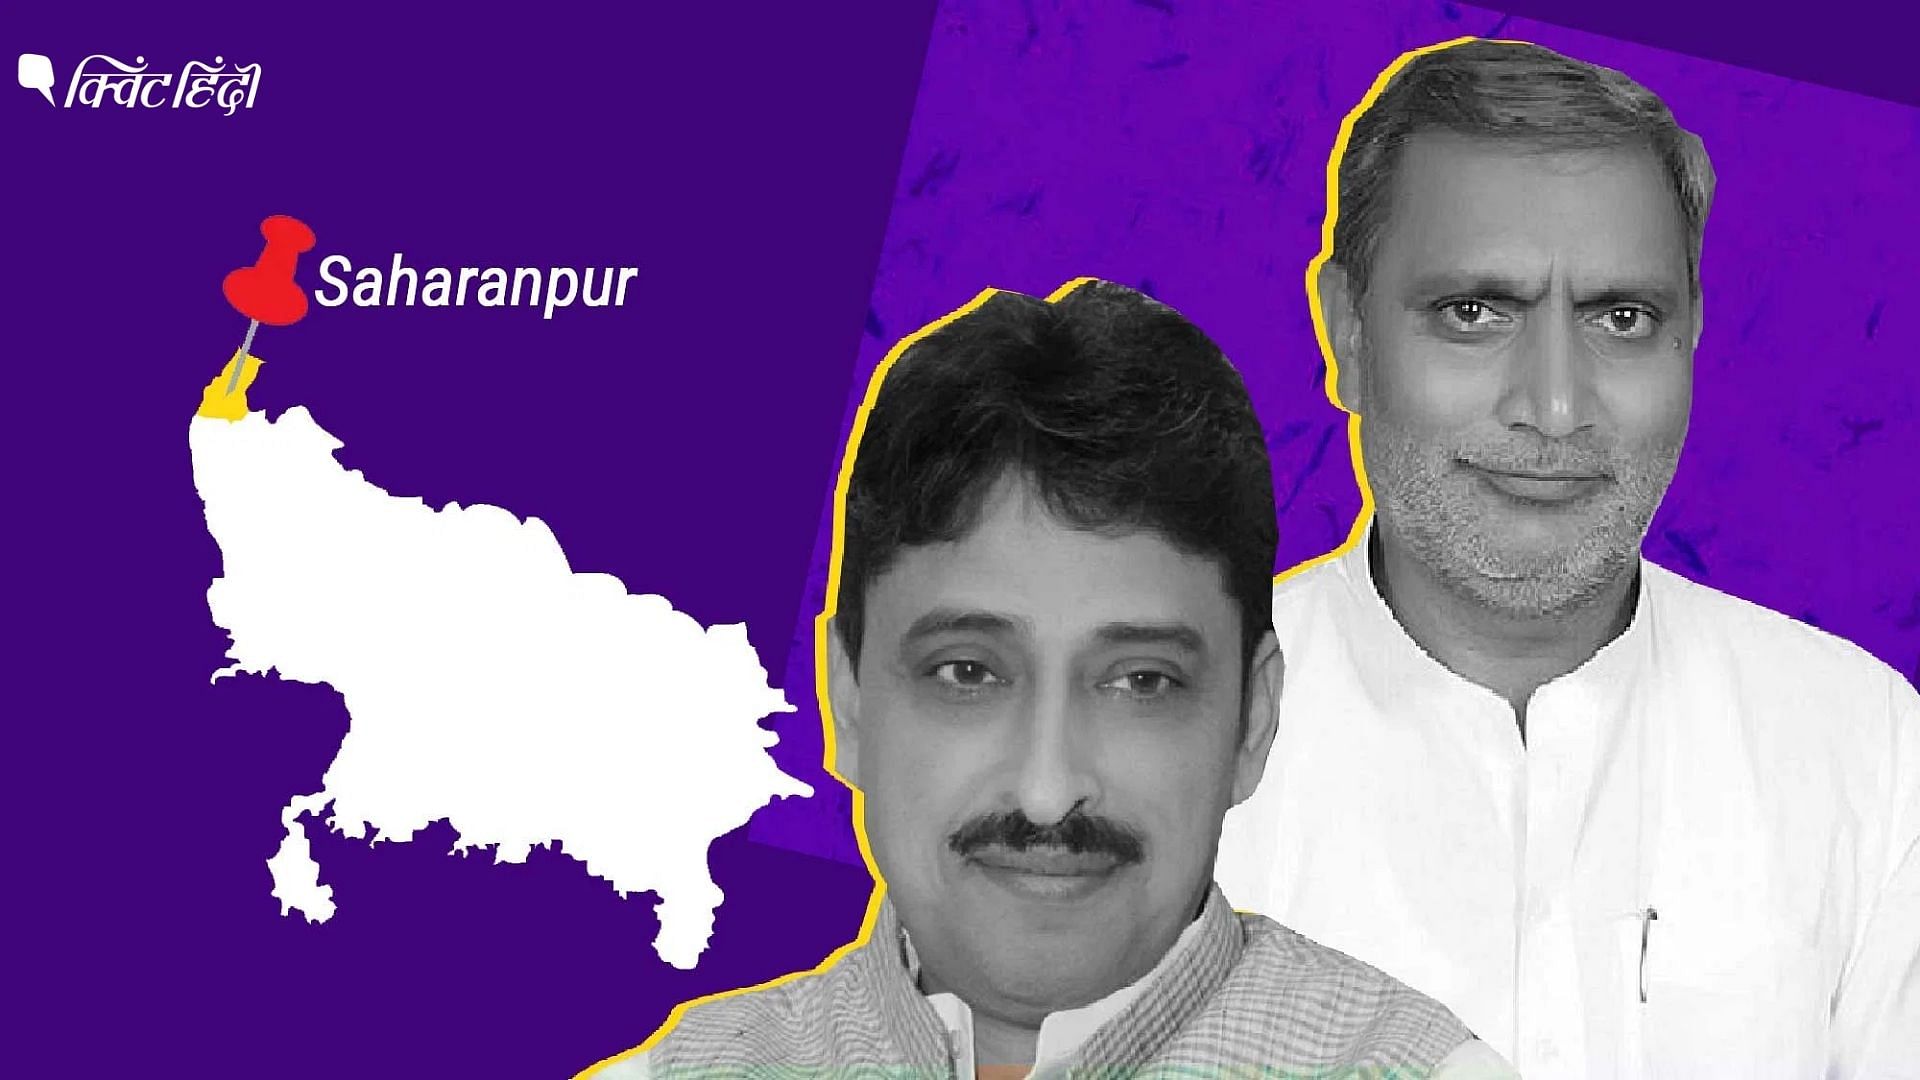 <div class="paragraphs"><p>UP: 3 दिन में 4 नेताओं का दलबदल, सहारनपुर में कैसे बदल रहे चुनावी समीकरण?</p></div>